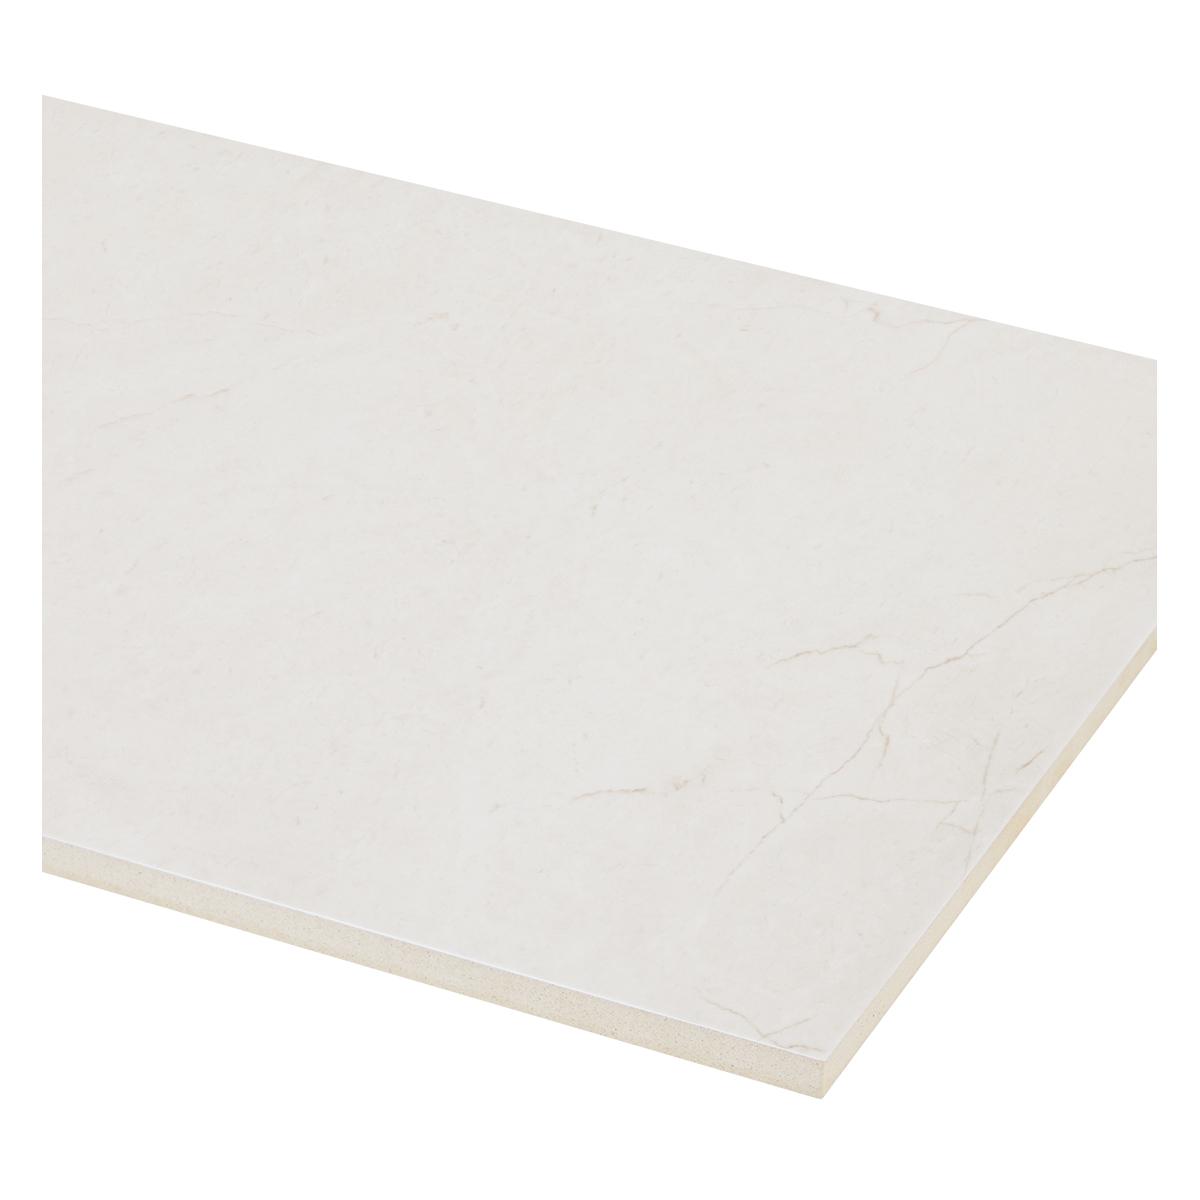 Mayólica Tissue Plane Crema Brillante - 30X60 cm - 1.44 m2